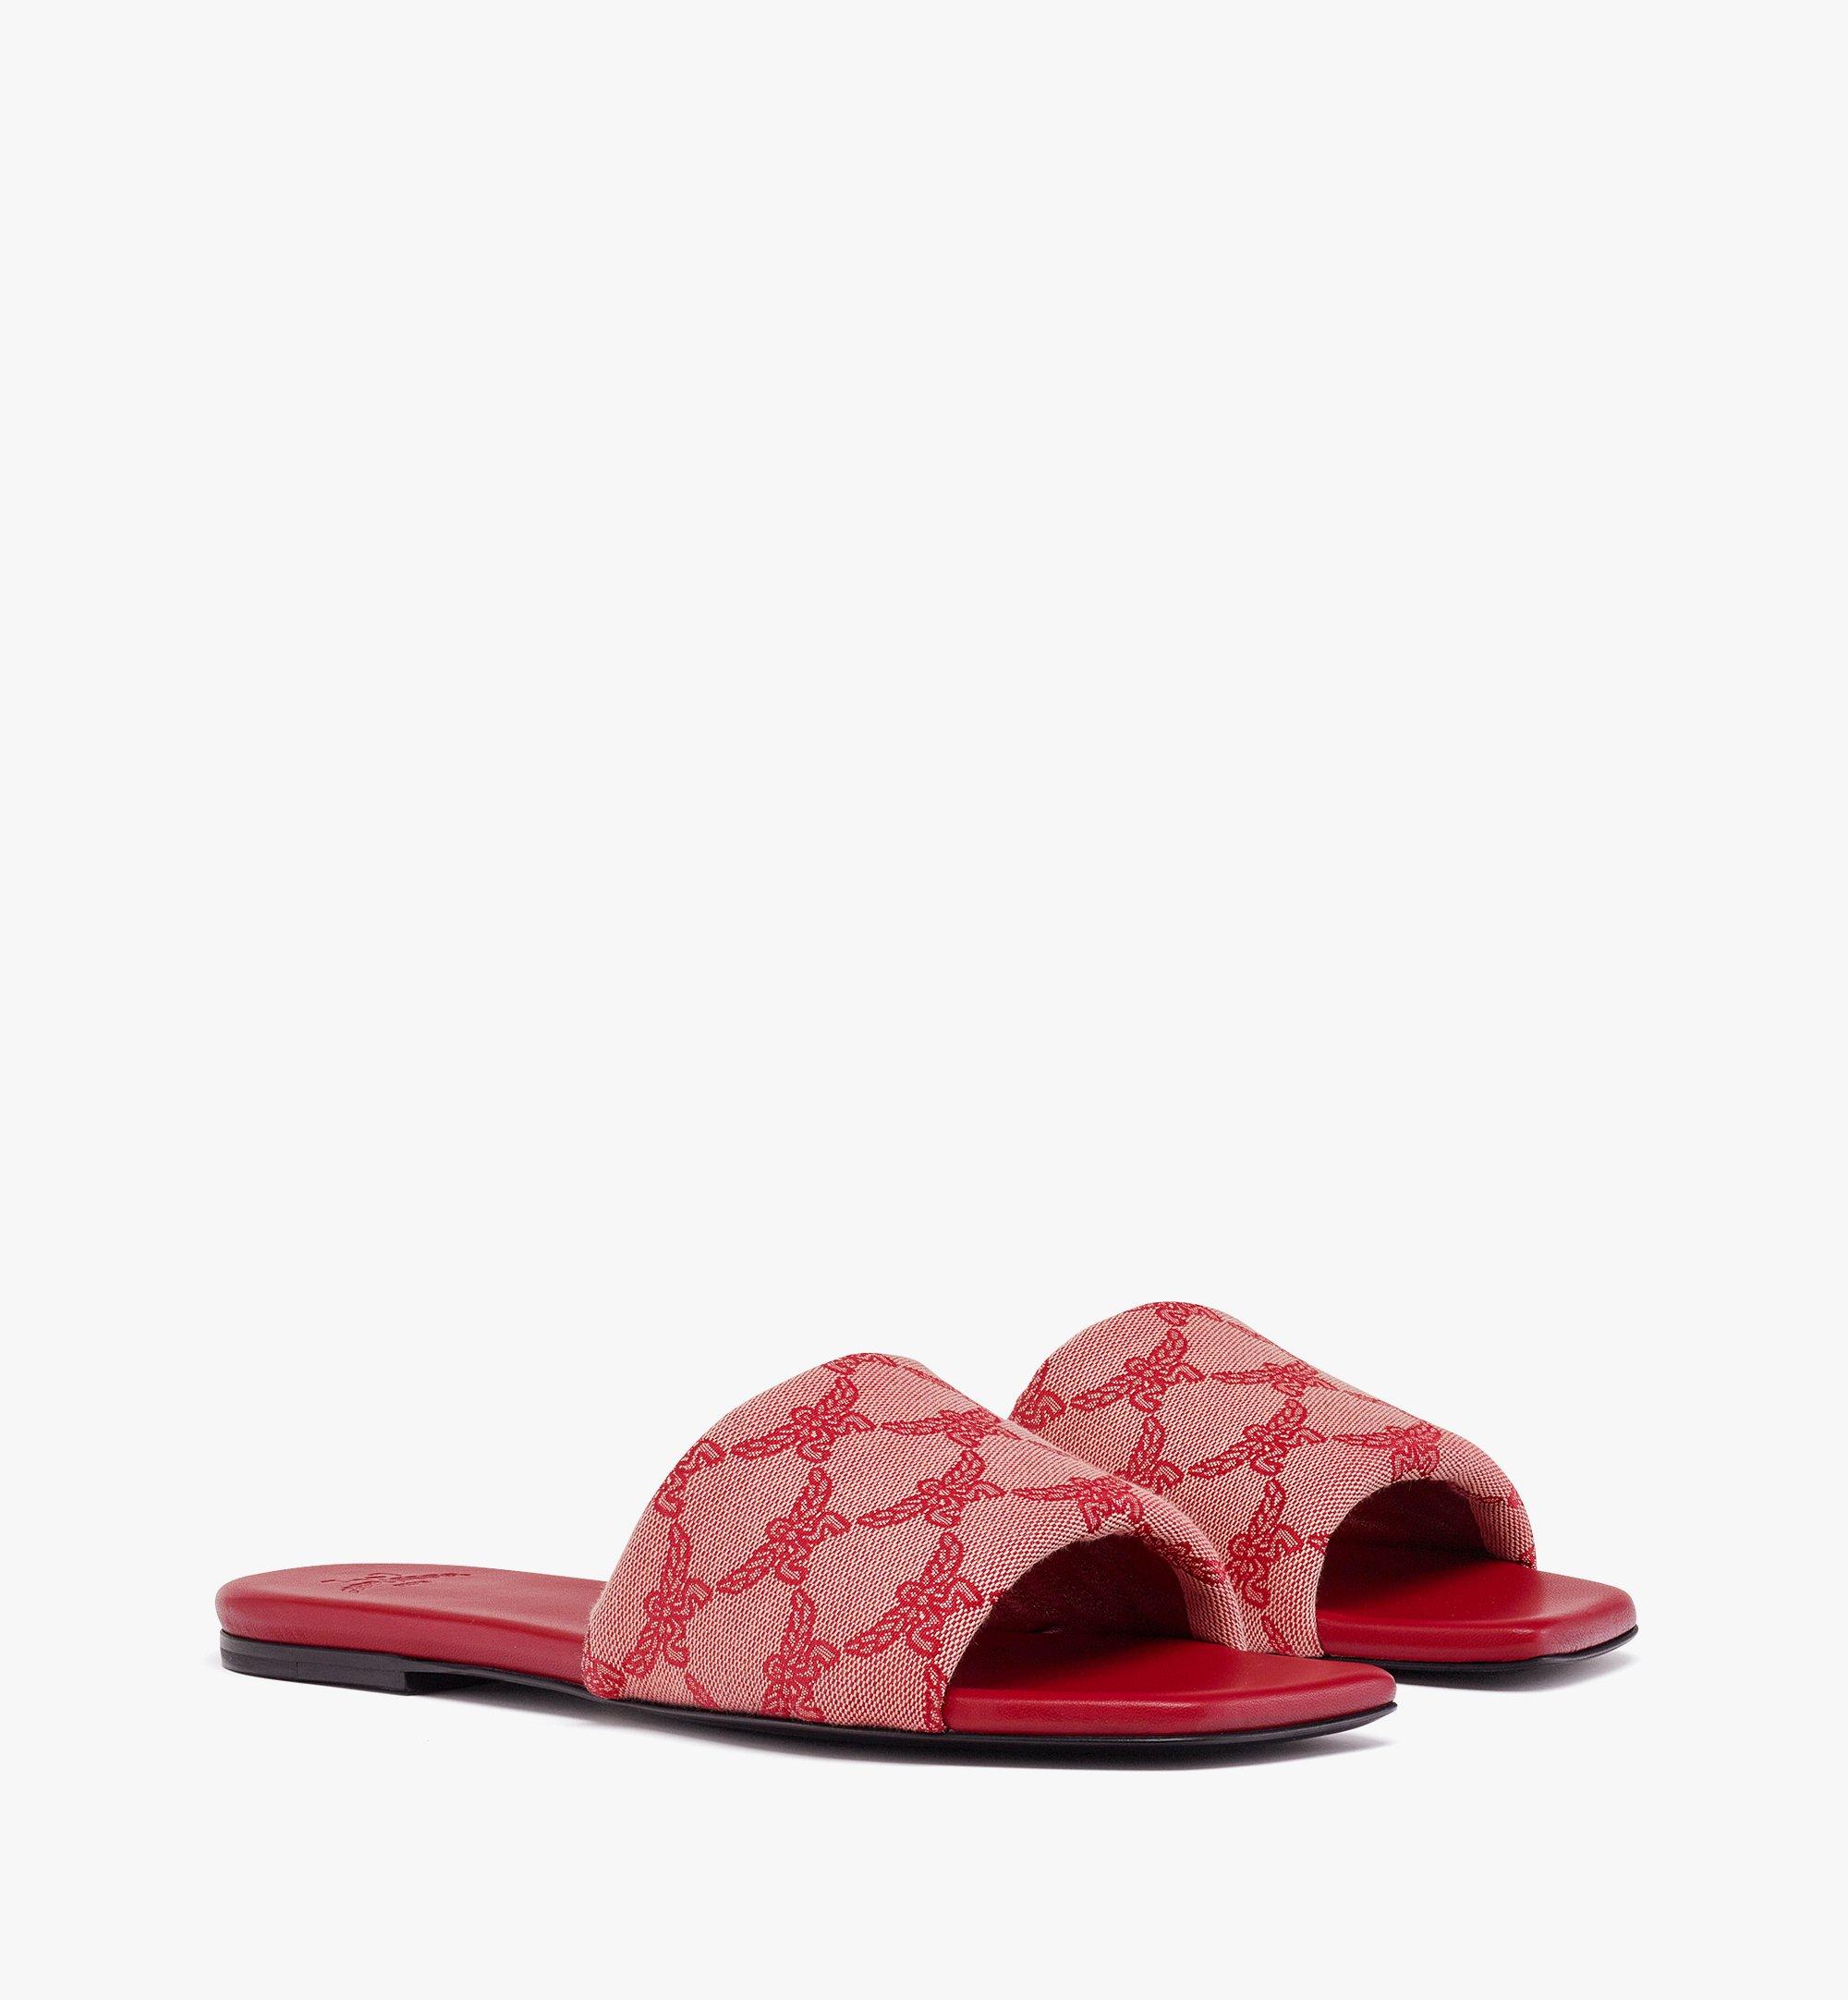 Mcm Flat Sandals In Lauretos Jacquard In Valentine Red